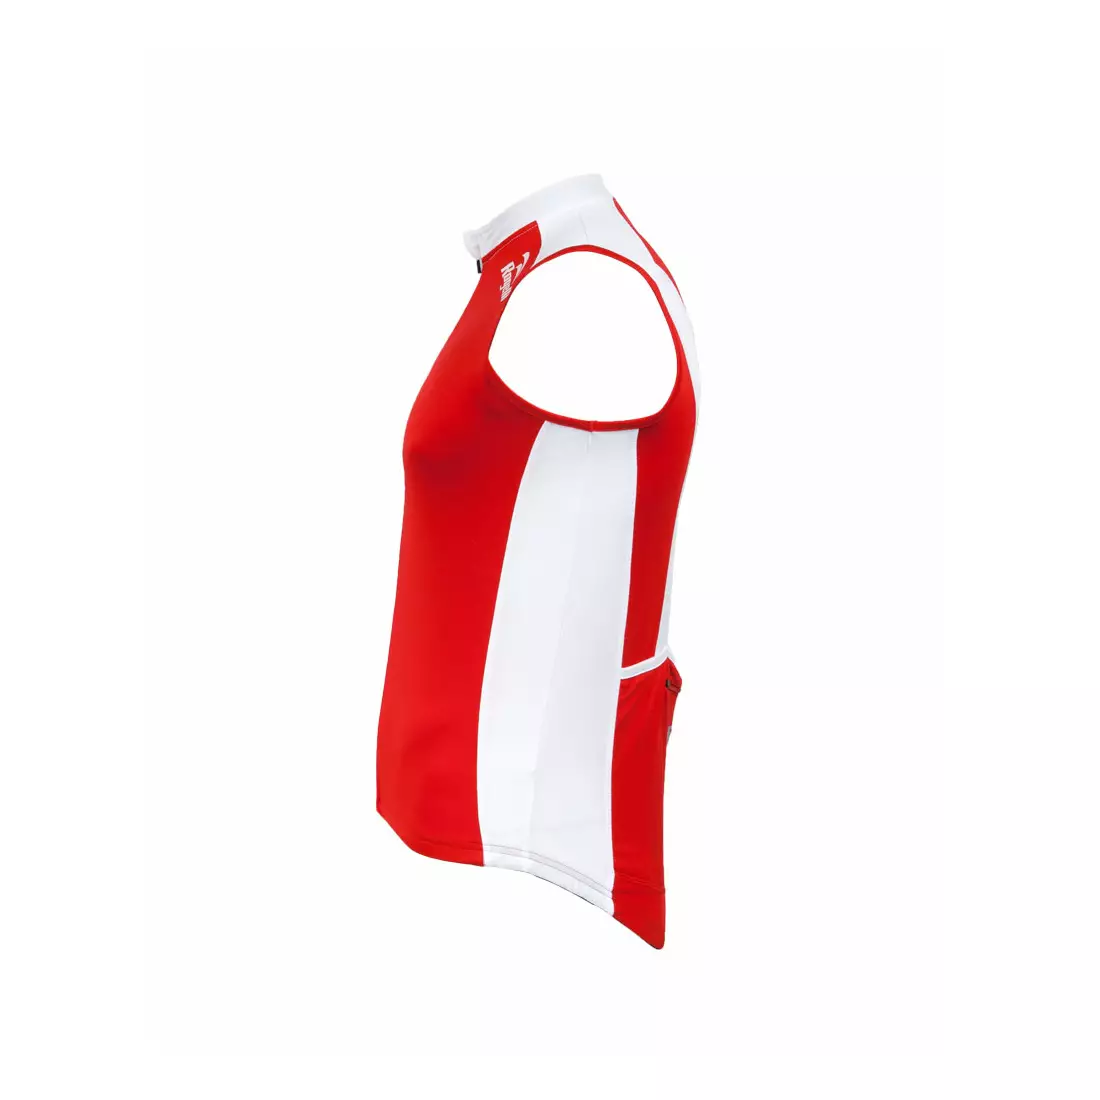 ROGELLI POLINO - pánsky cyklistický dres bez rukávov, farba: červená a biela